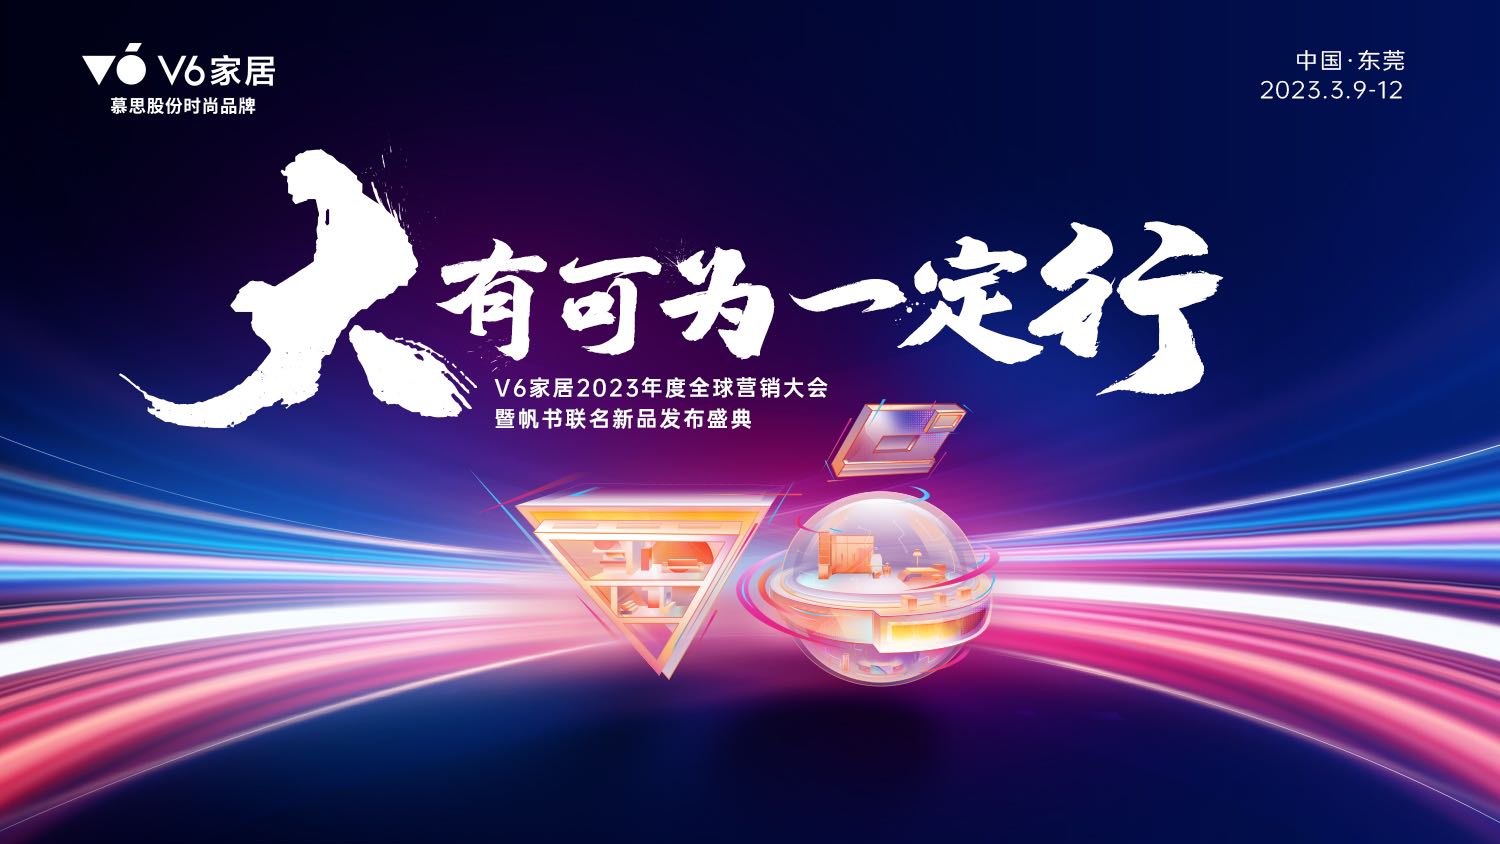 V6家居将在东莞迎来2023营销大会暨樊登读书联名新品发布会。